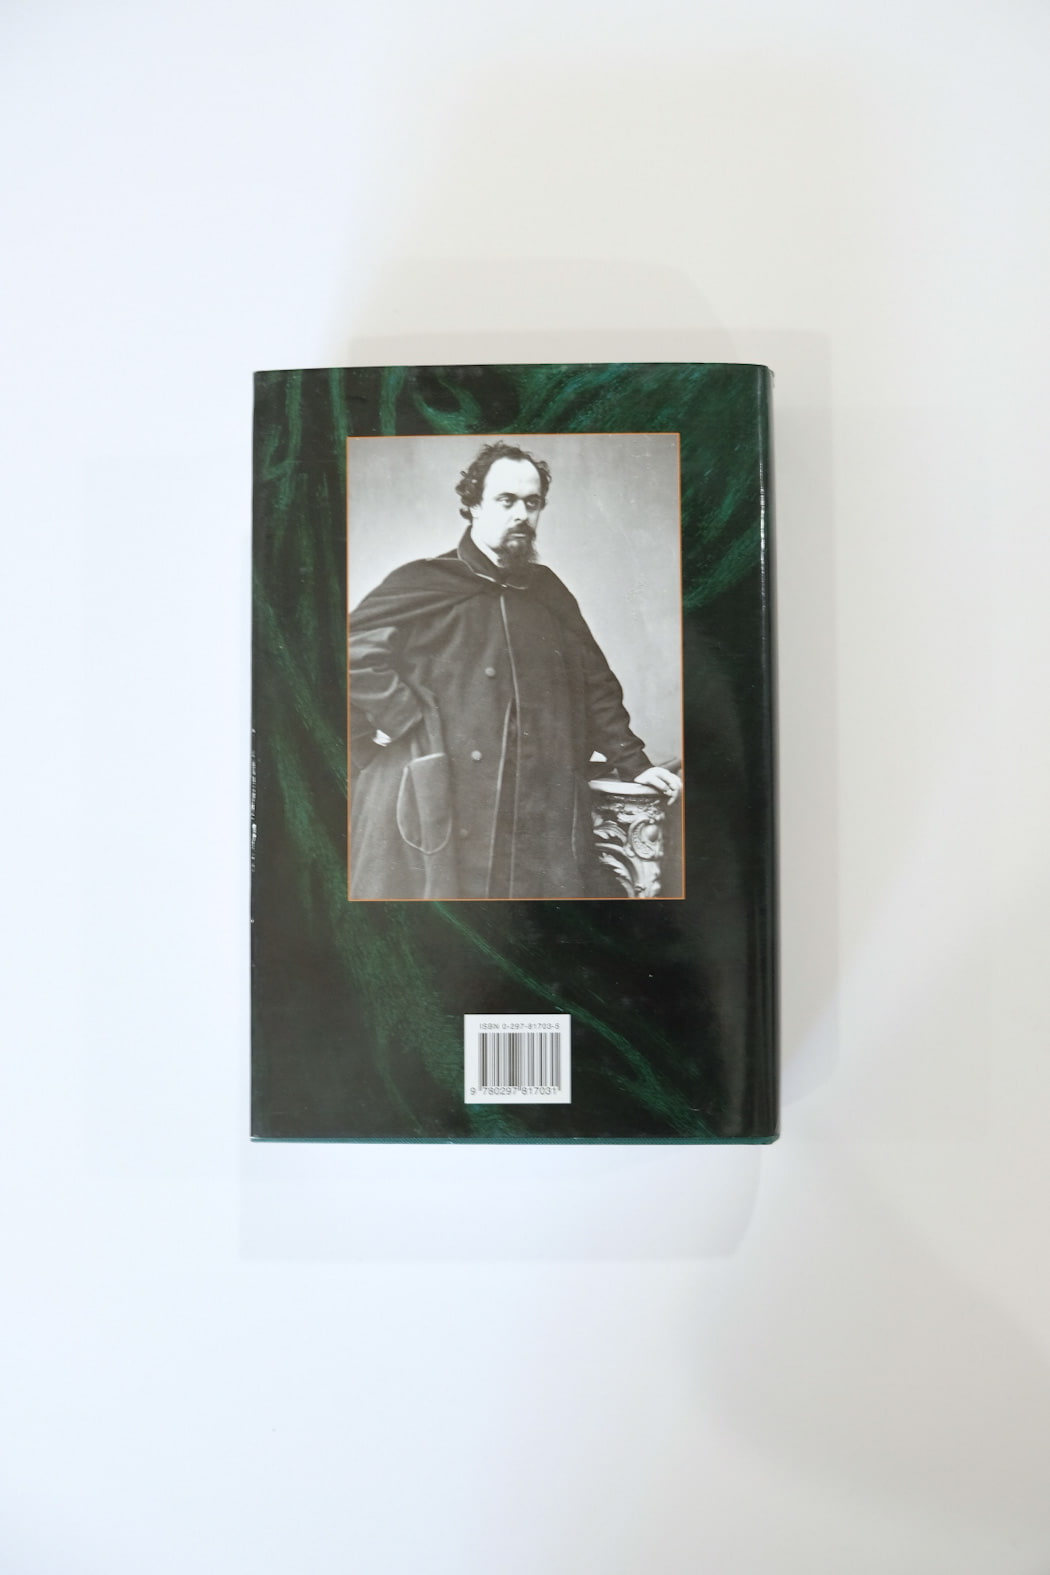 Dante Gabriel Rossetti by Jan Marsh